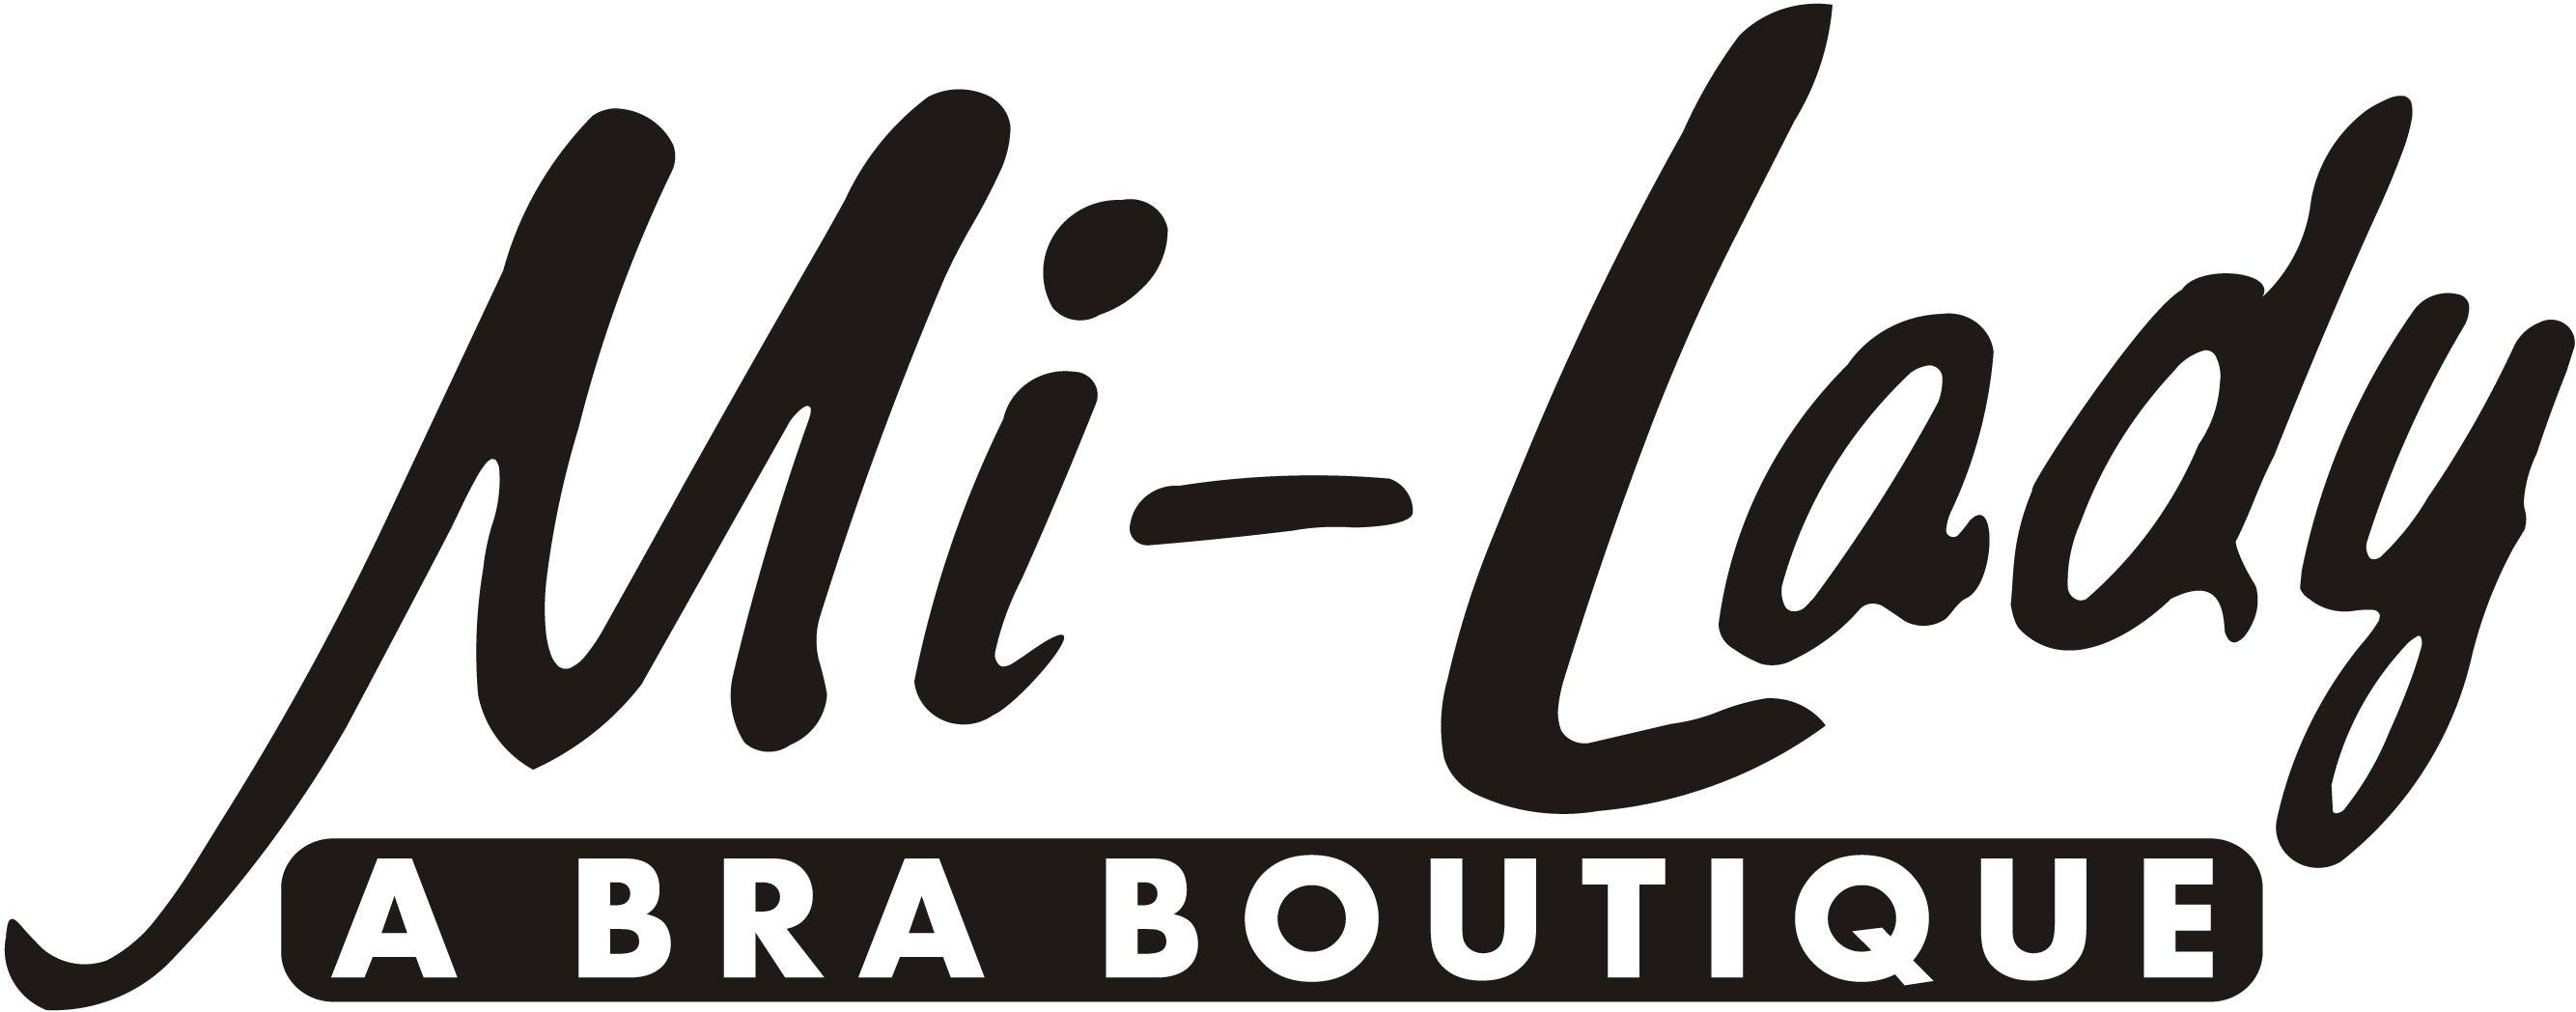 Dominique #7000 Minimizer Bra – Mi-Lady Bra Boutique